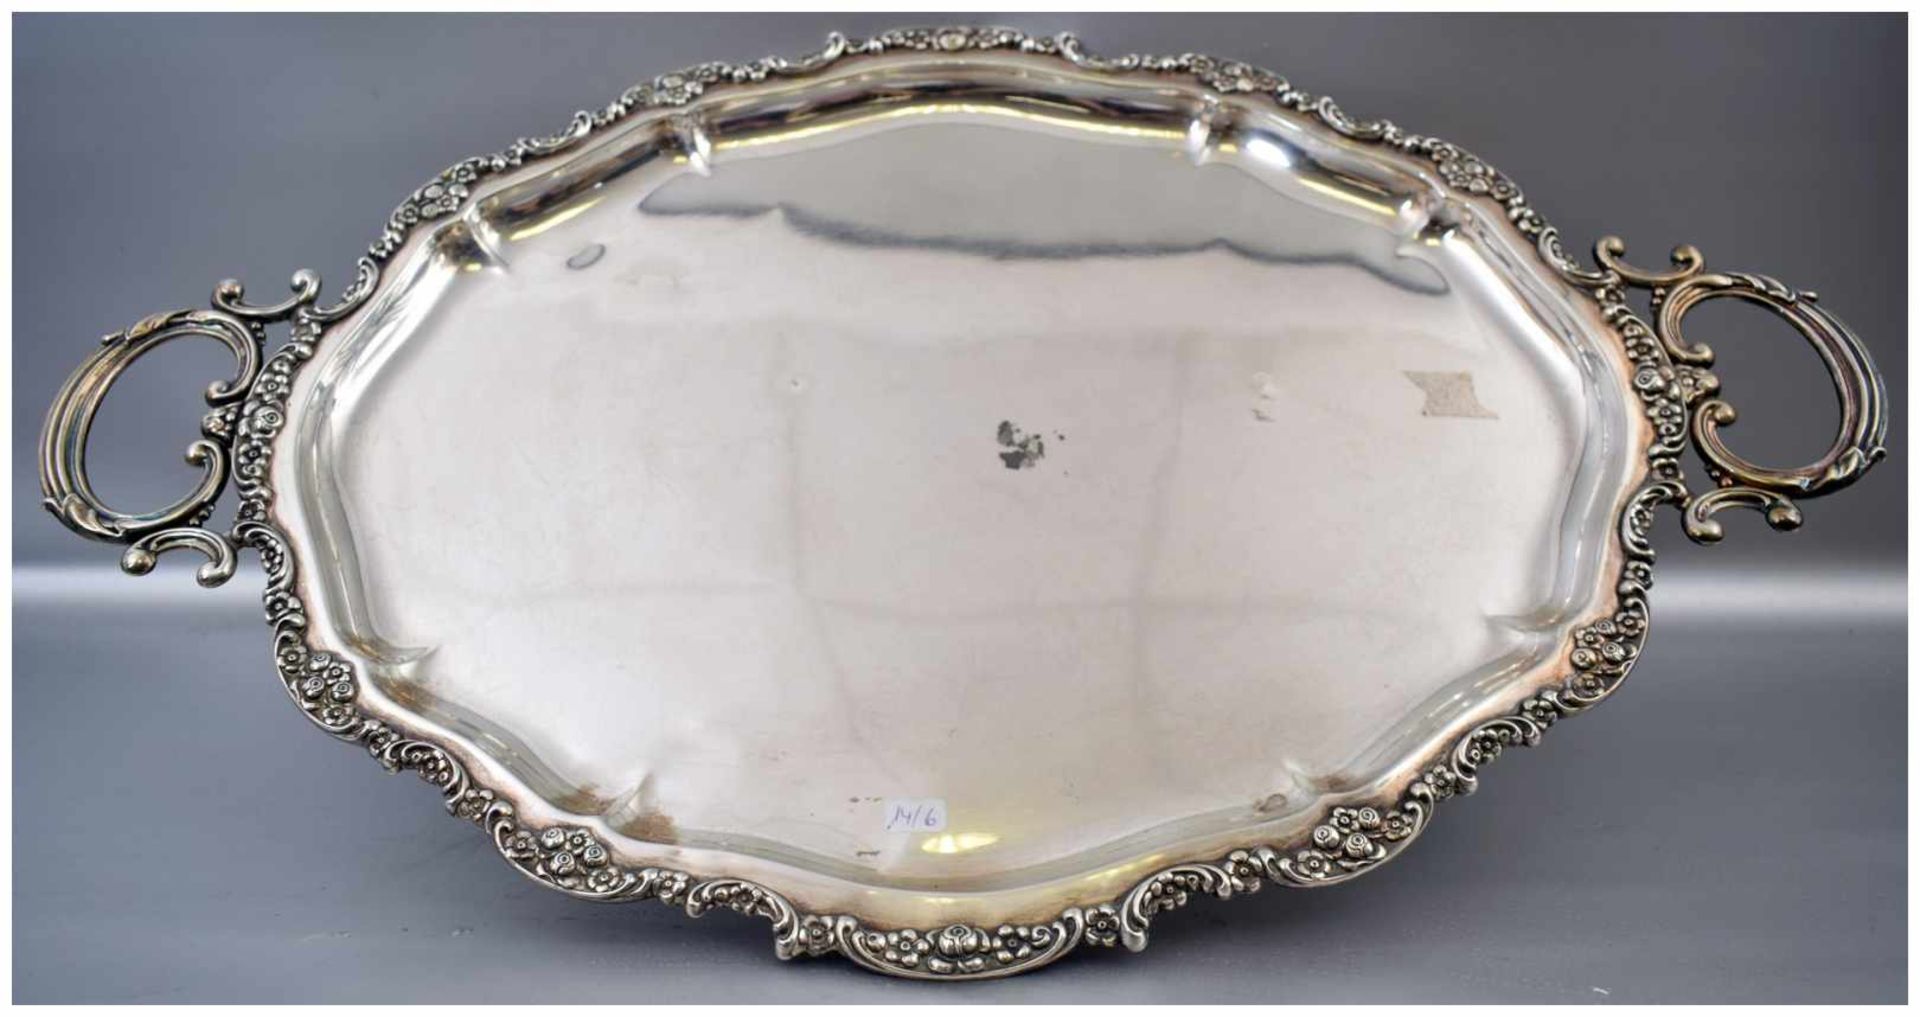 Großes Tablett oval, mit Blumenranken verzierter Rand, zwei Griffe, 38 X 61 cm, 1380 g, 925er